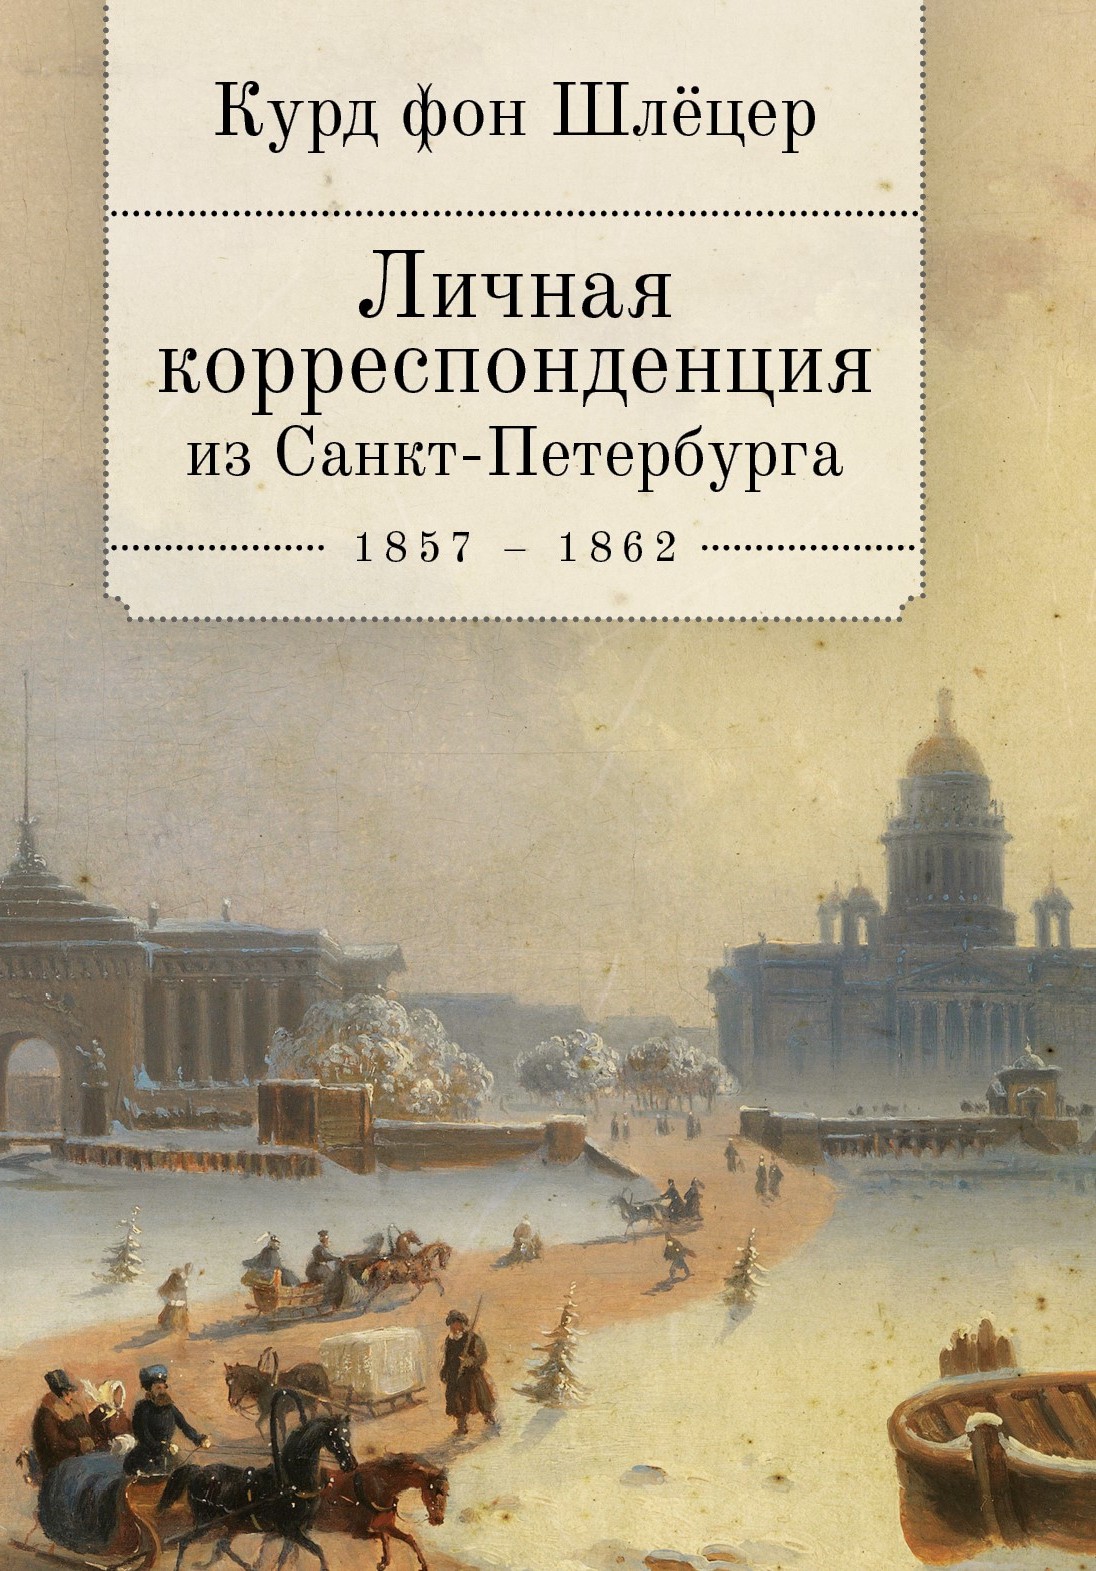 Личная корреспонденция из Санкт-Петербурга. 1856-1862